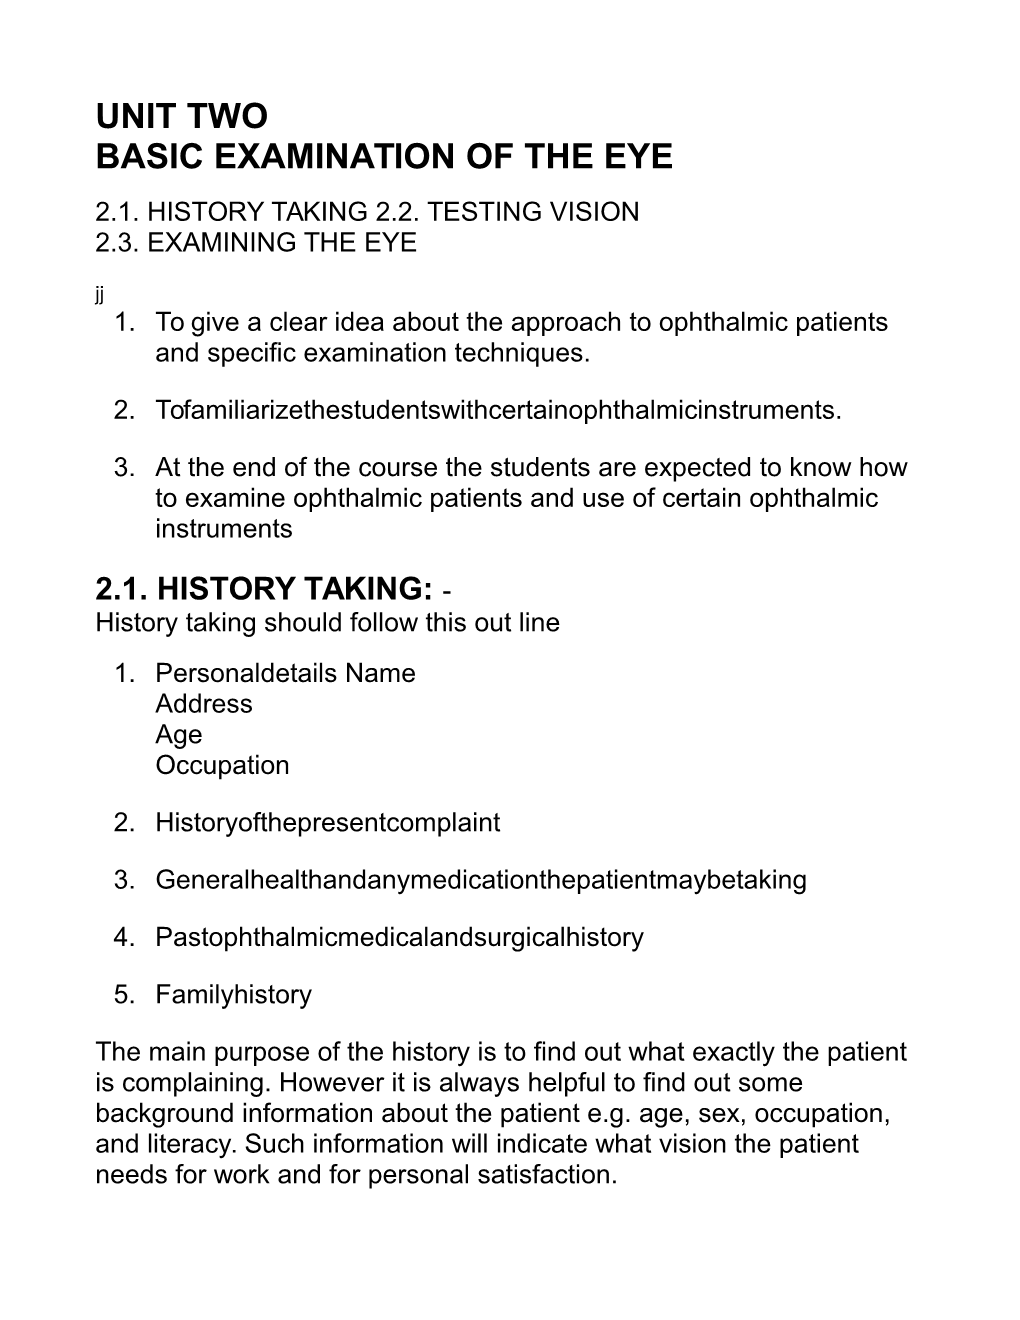 Unit Two Basic Examination of the Eye 2.1